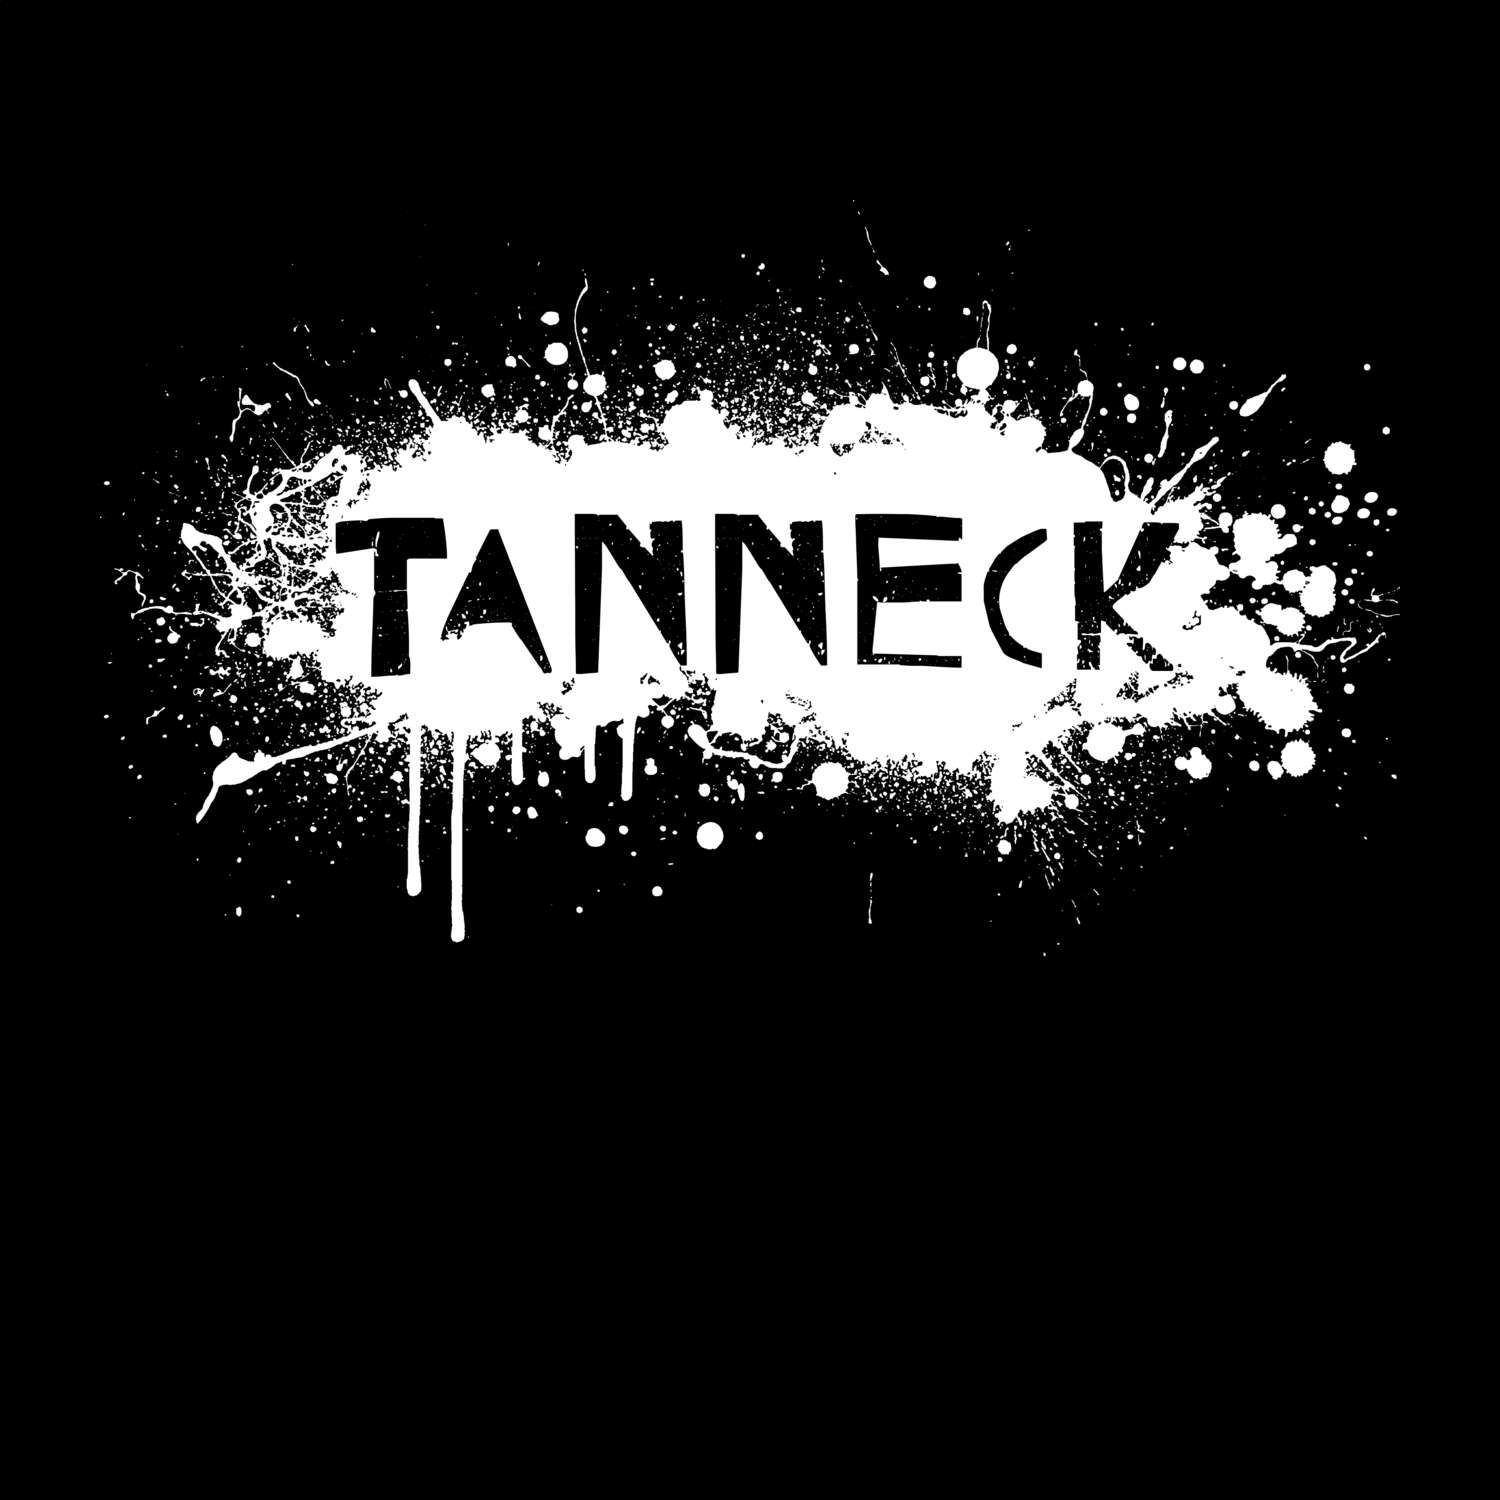 Tanneck T-Shirt »Paint Splash Punk«